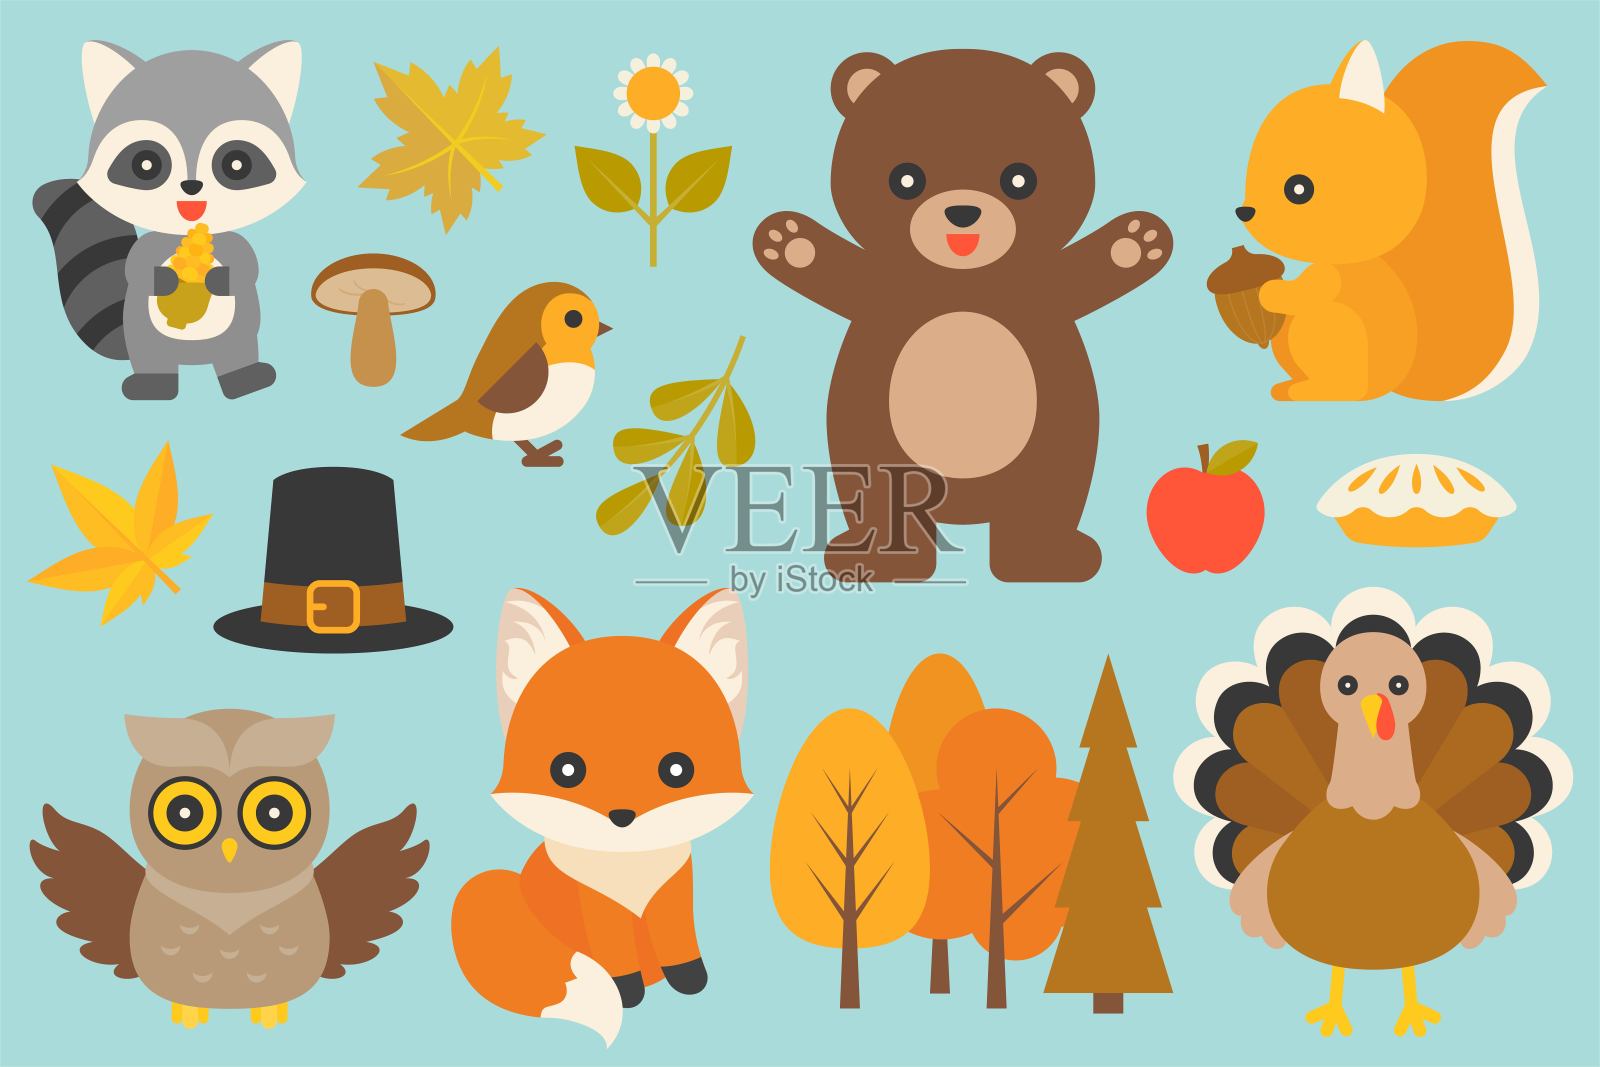 平面设计有熊、火鸡、鸟、狐狸、猫头鹰、浣熊、蘑菇、枫叶、带叶子的树枝、感恩节和秋季朝圣帽等野生动物和元素插画图片素材